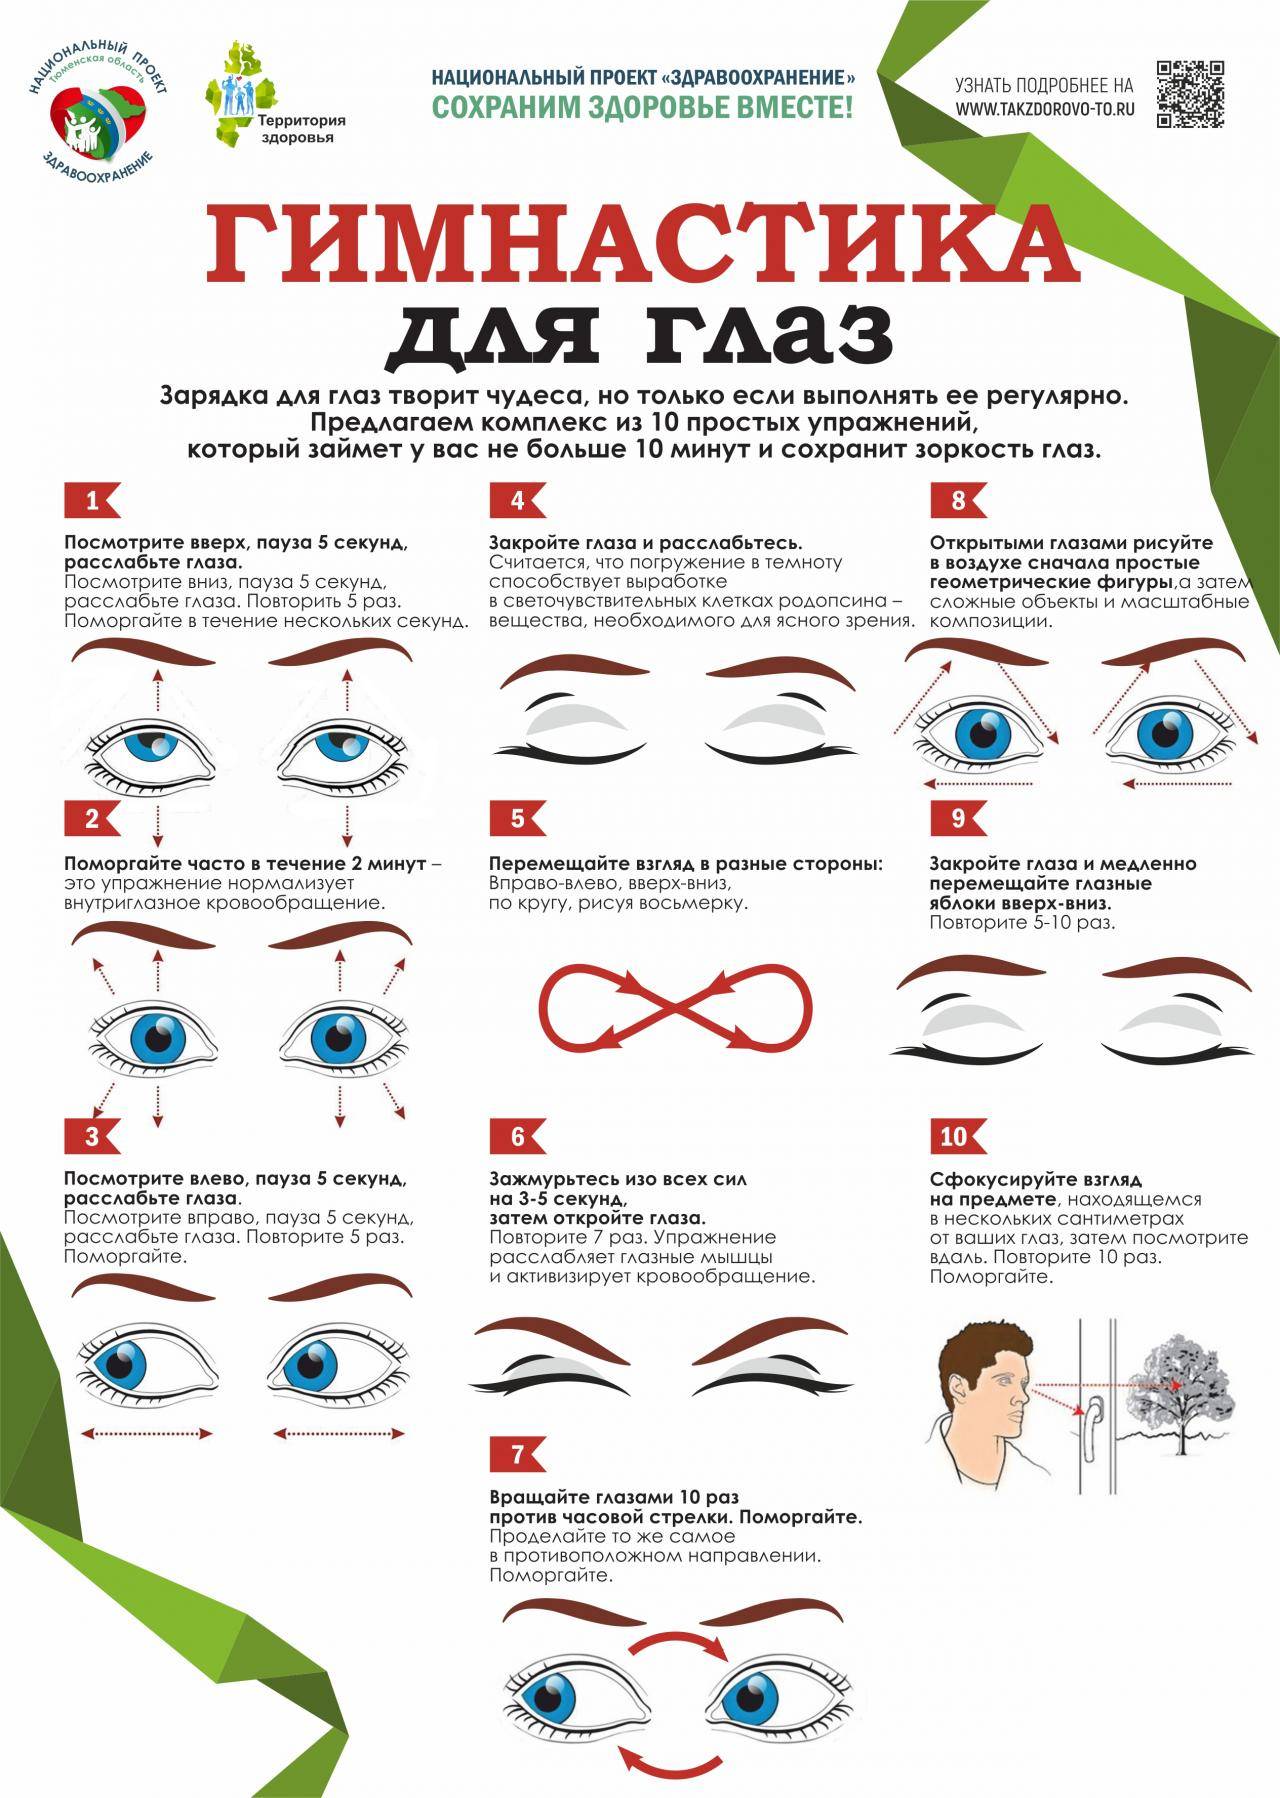 Йога (асаны) для глаз. дыхание закрытыми глазами при глаукоме и близорукости